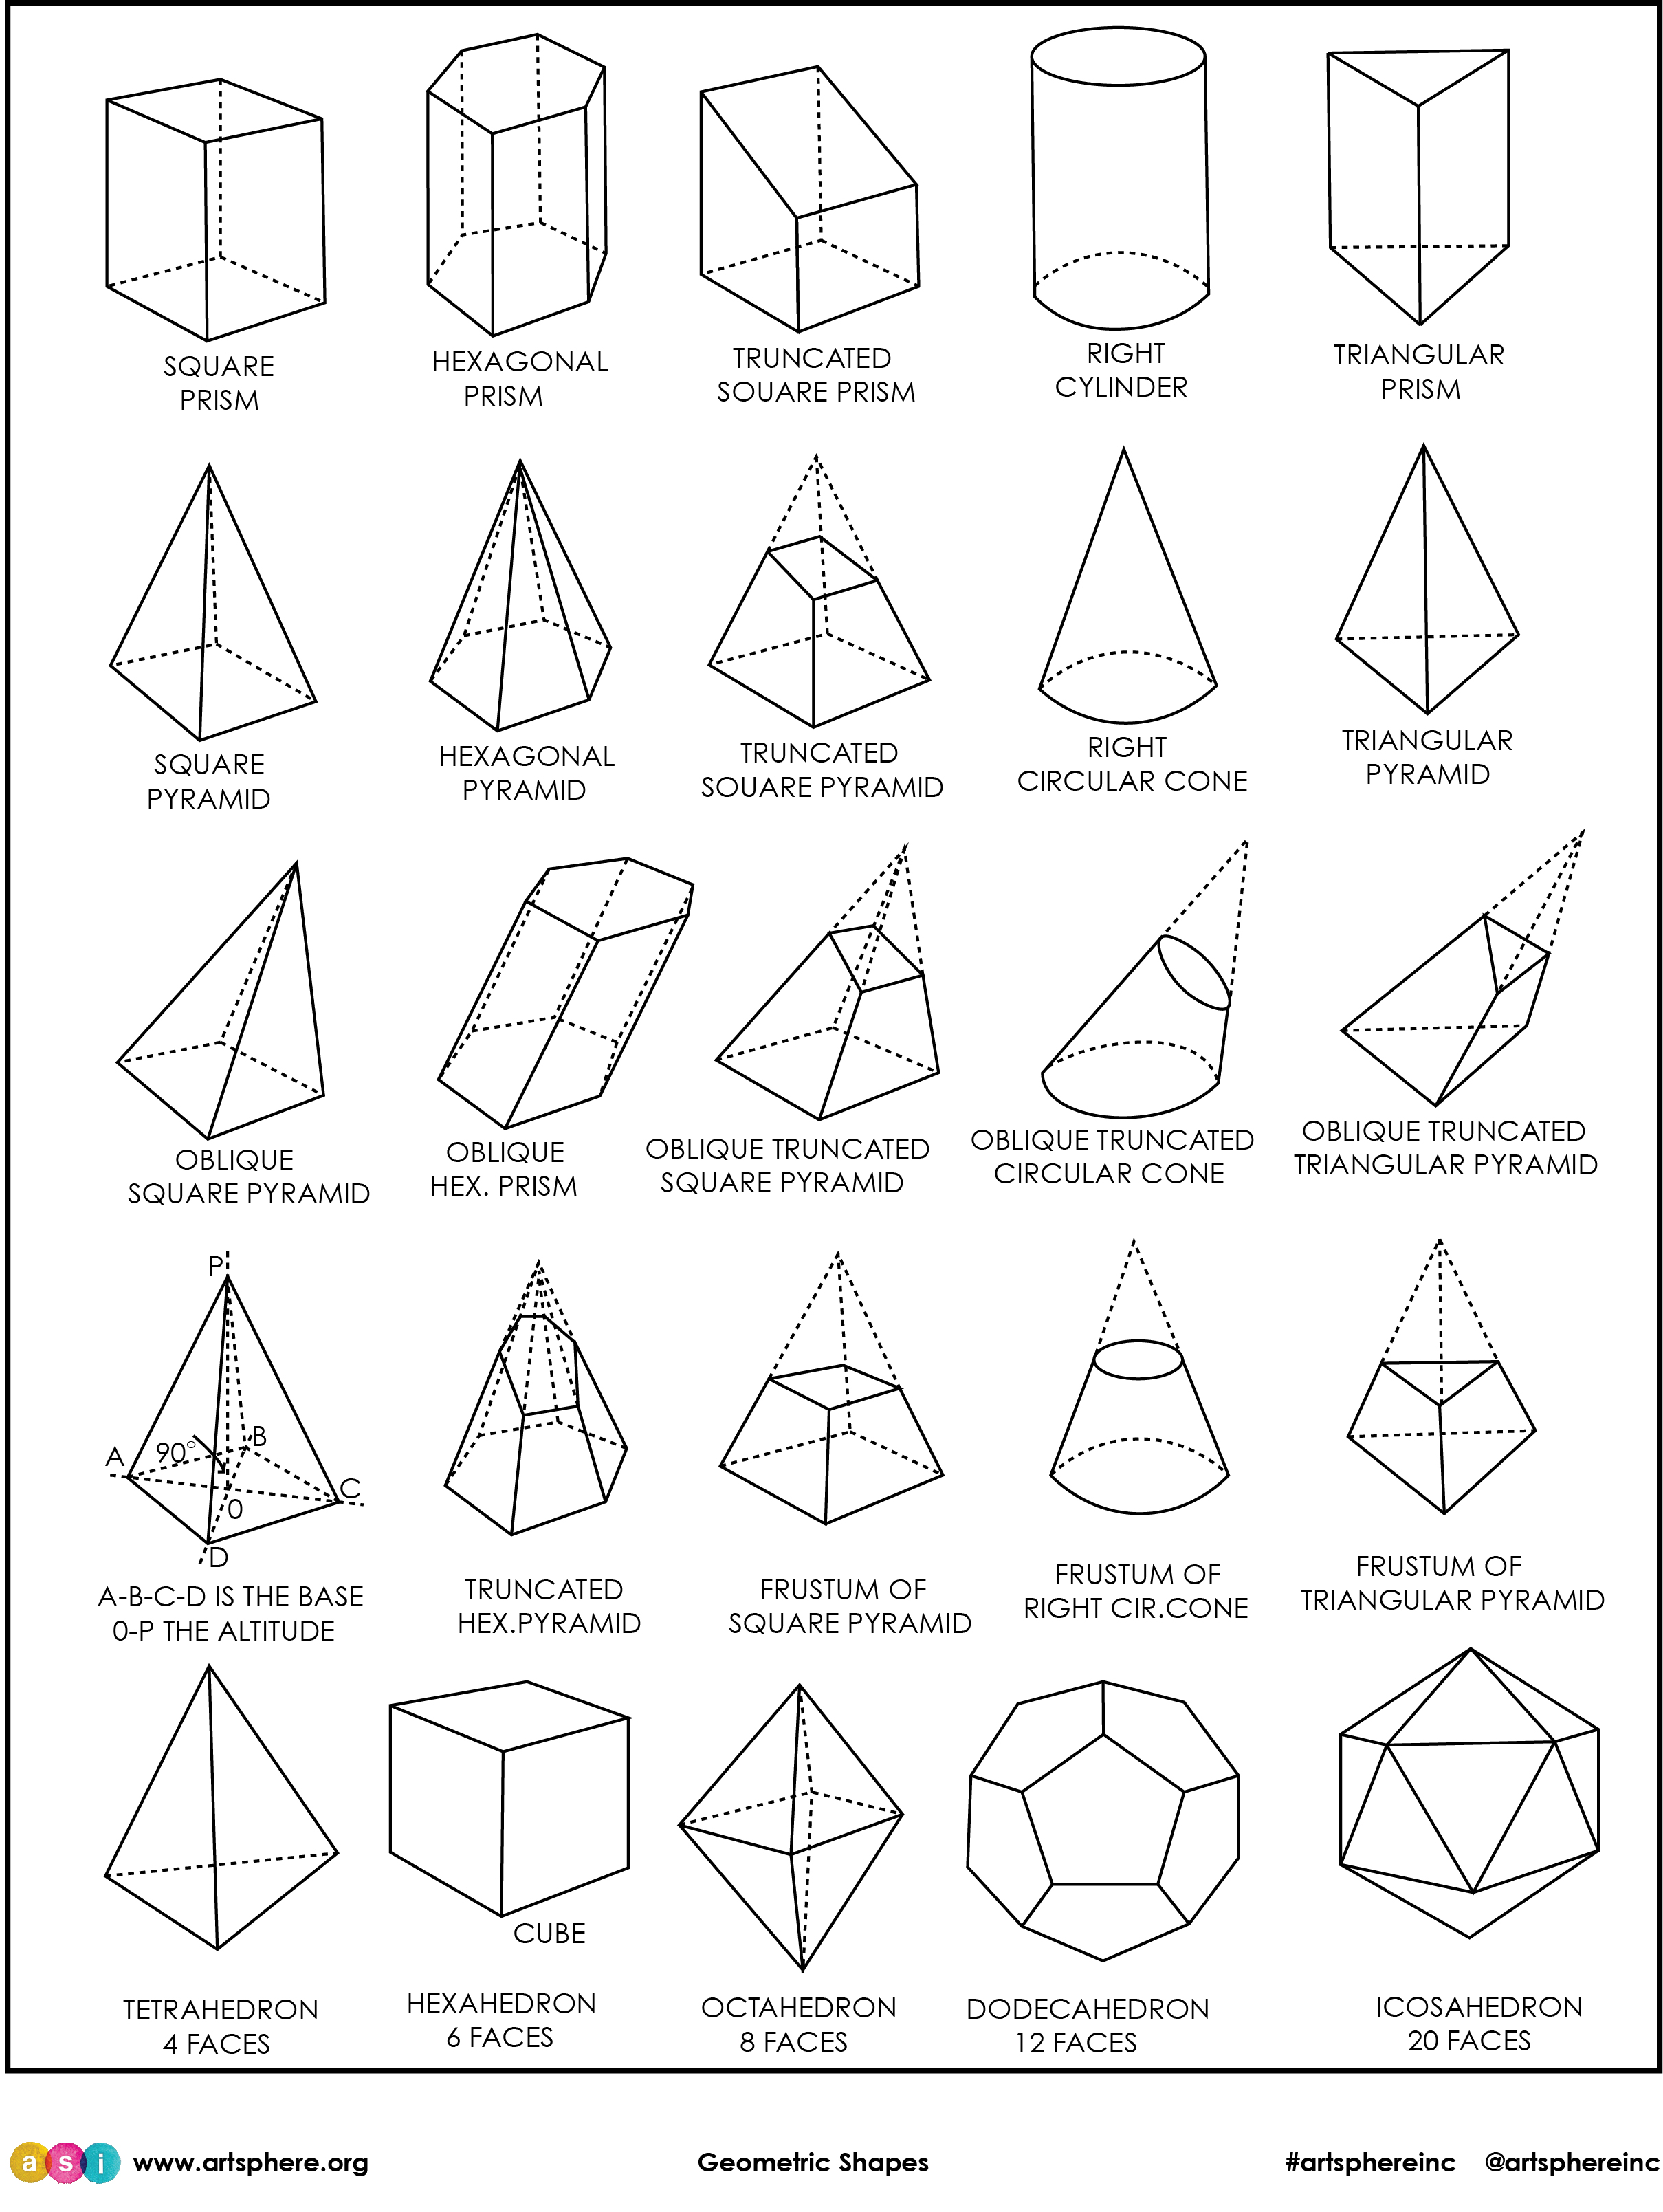 Объёмные геометрические фигуры и их названия